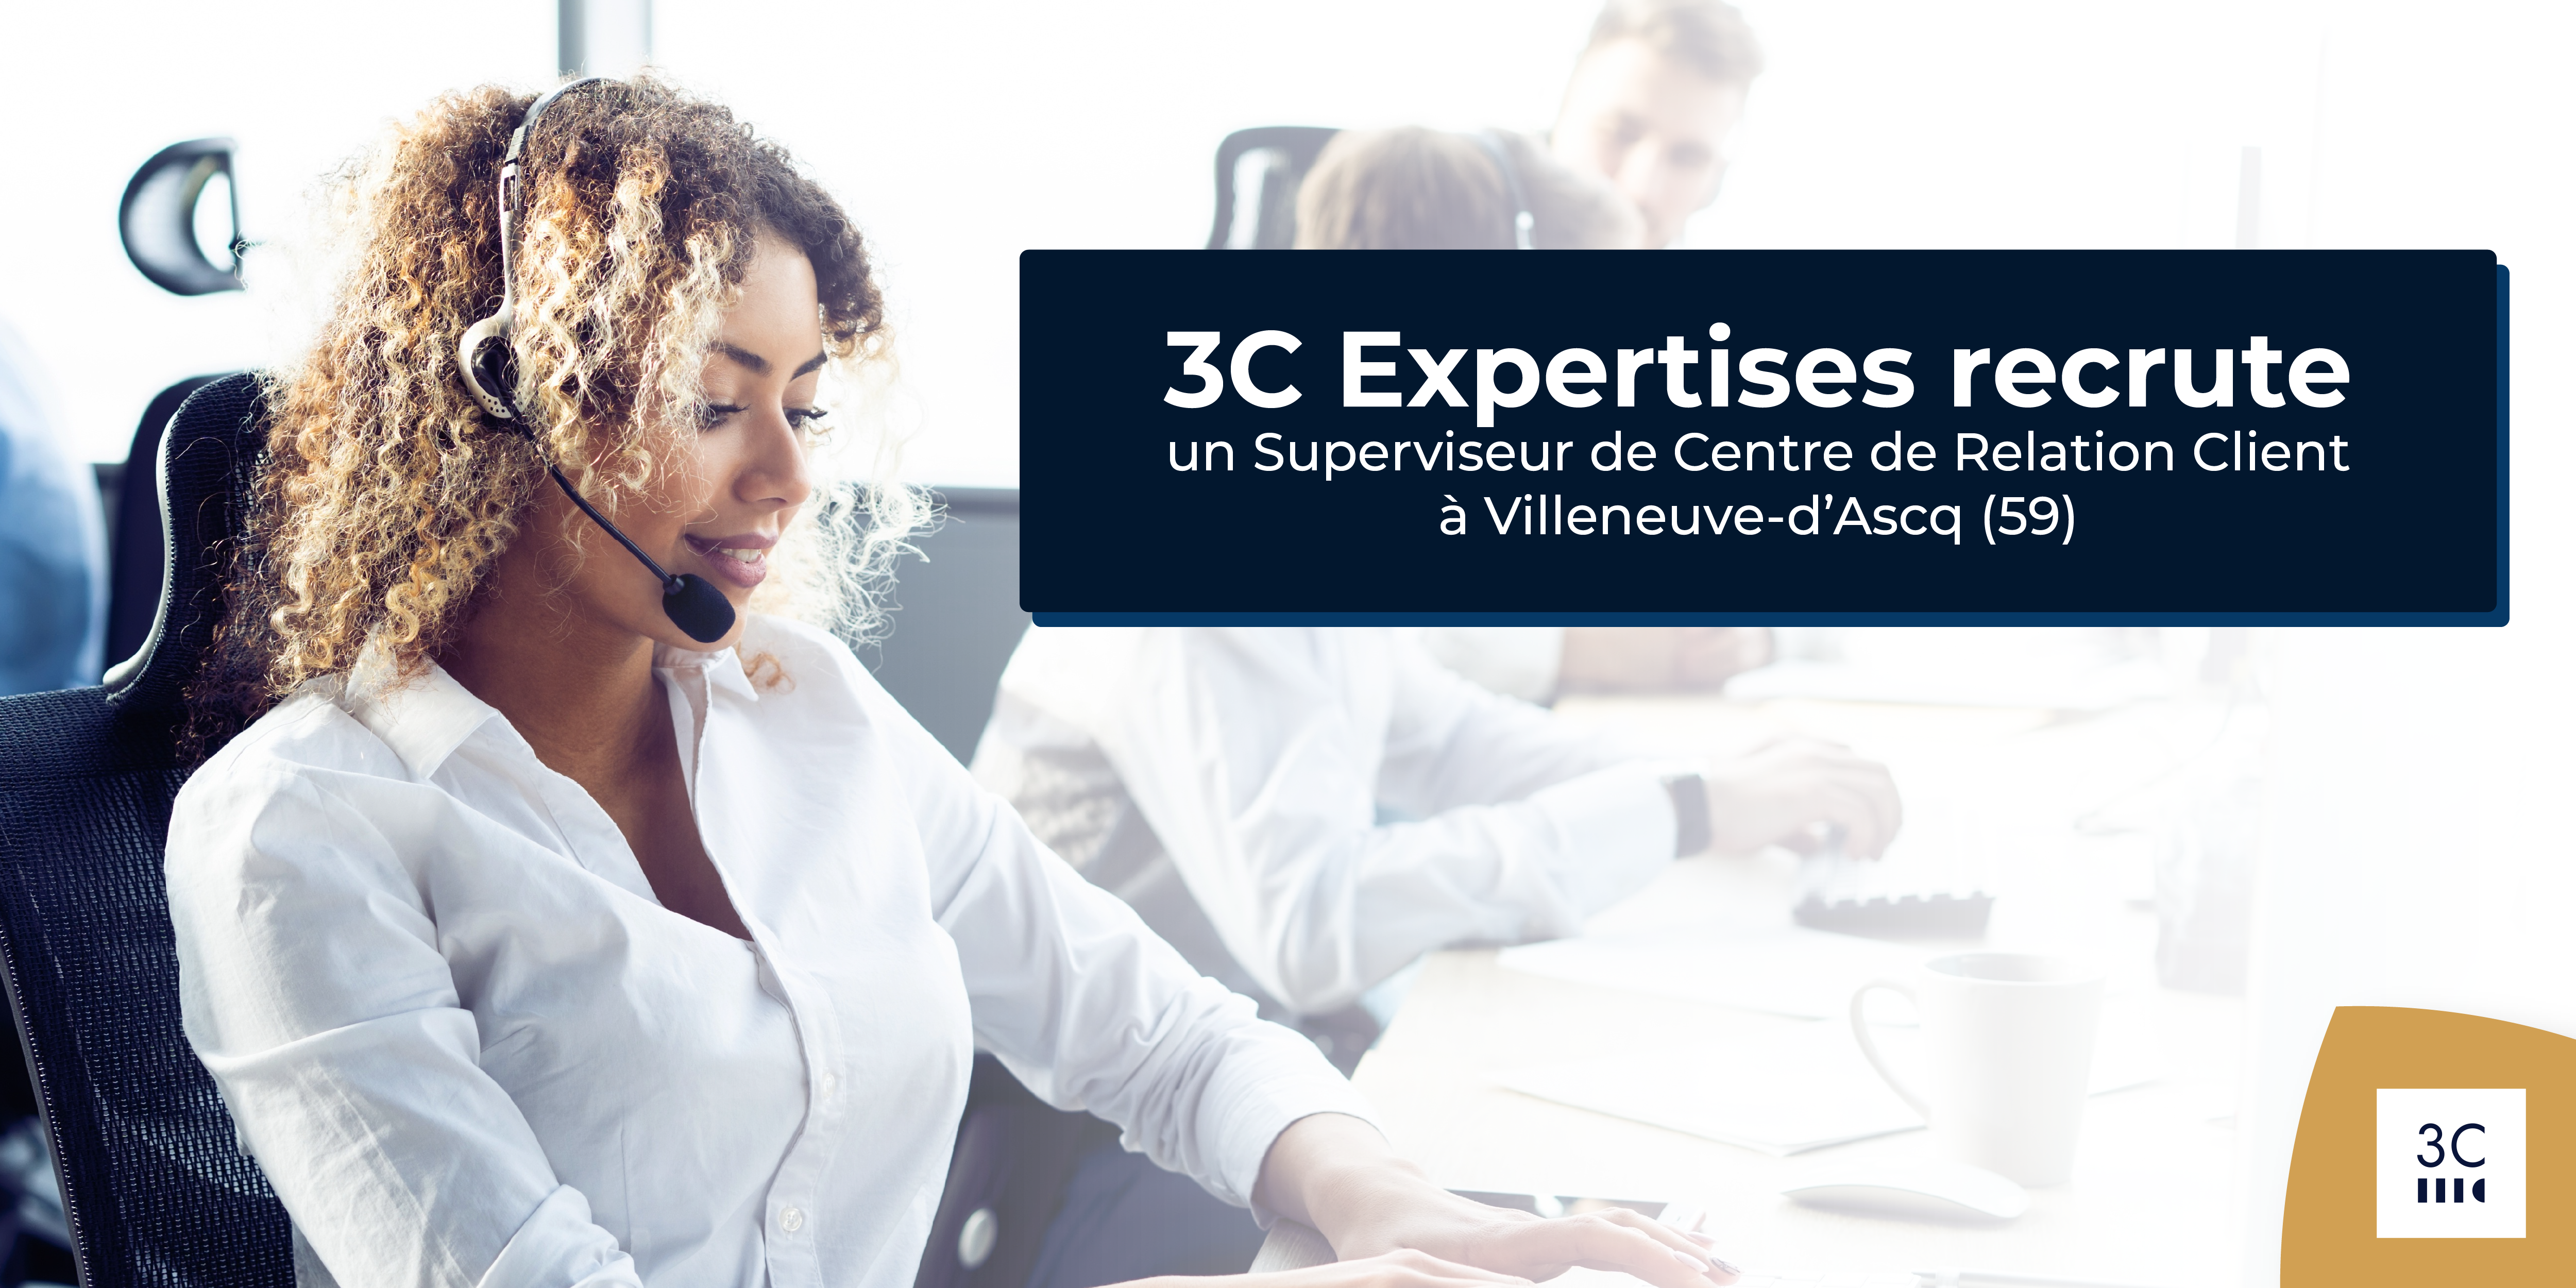 Lire la suite à propos de l’article 3C Expertises recrute un Superviseur de Centre de Relation Client H/F à Villeneuve-d’Ascq (59). 👥